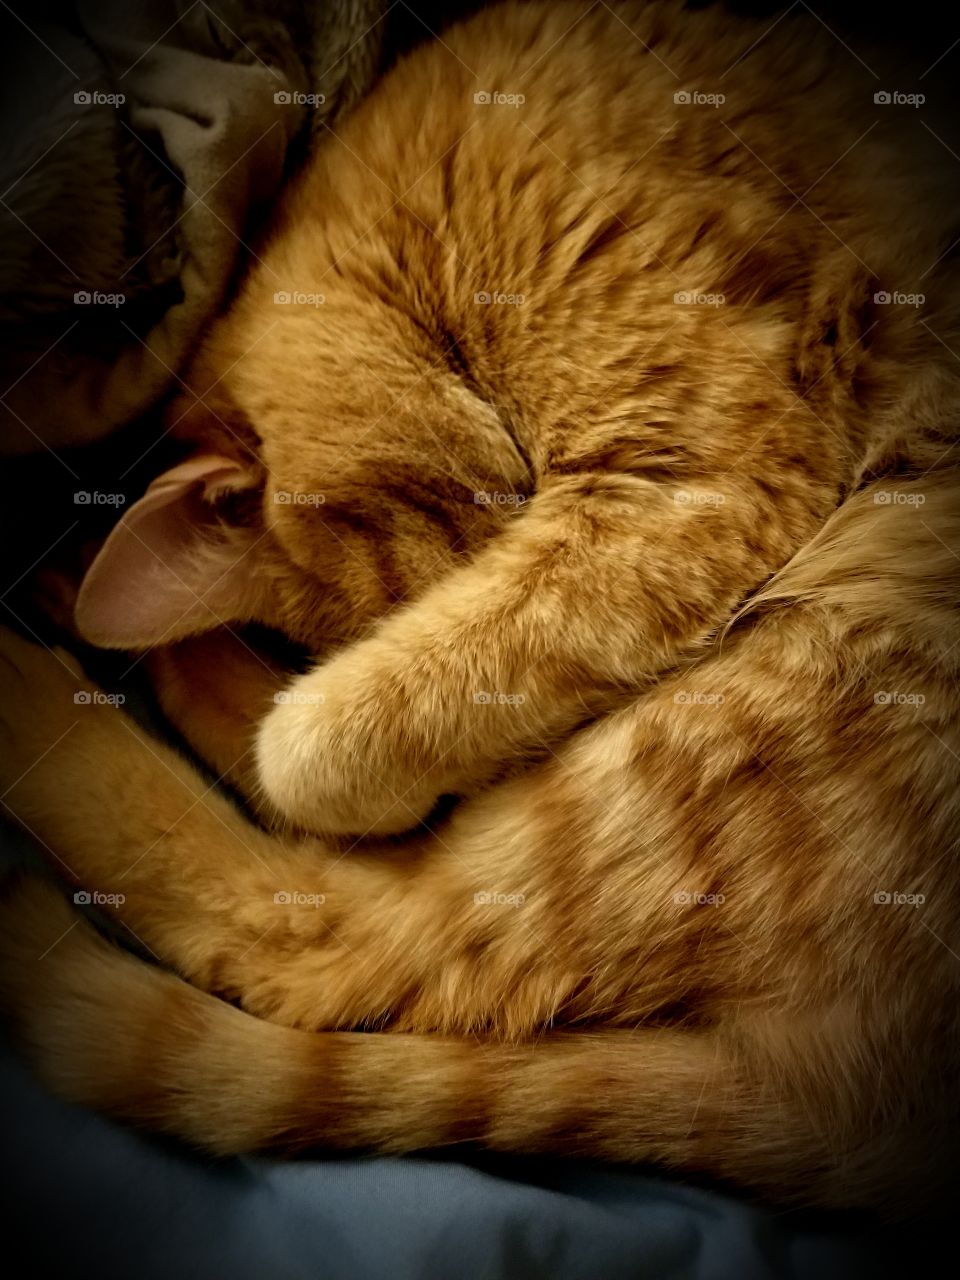 kitty.. as snug as a bug in a rug...